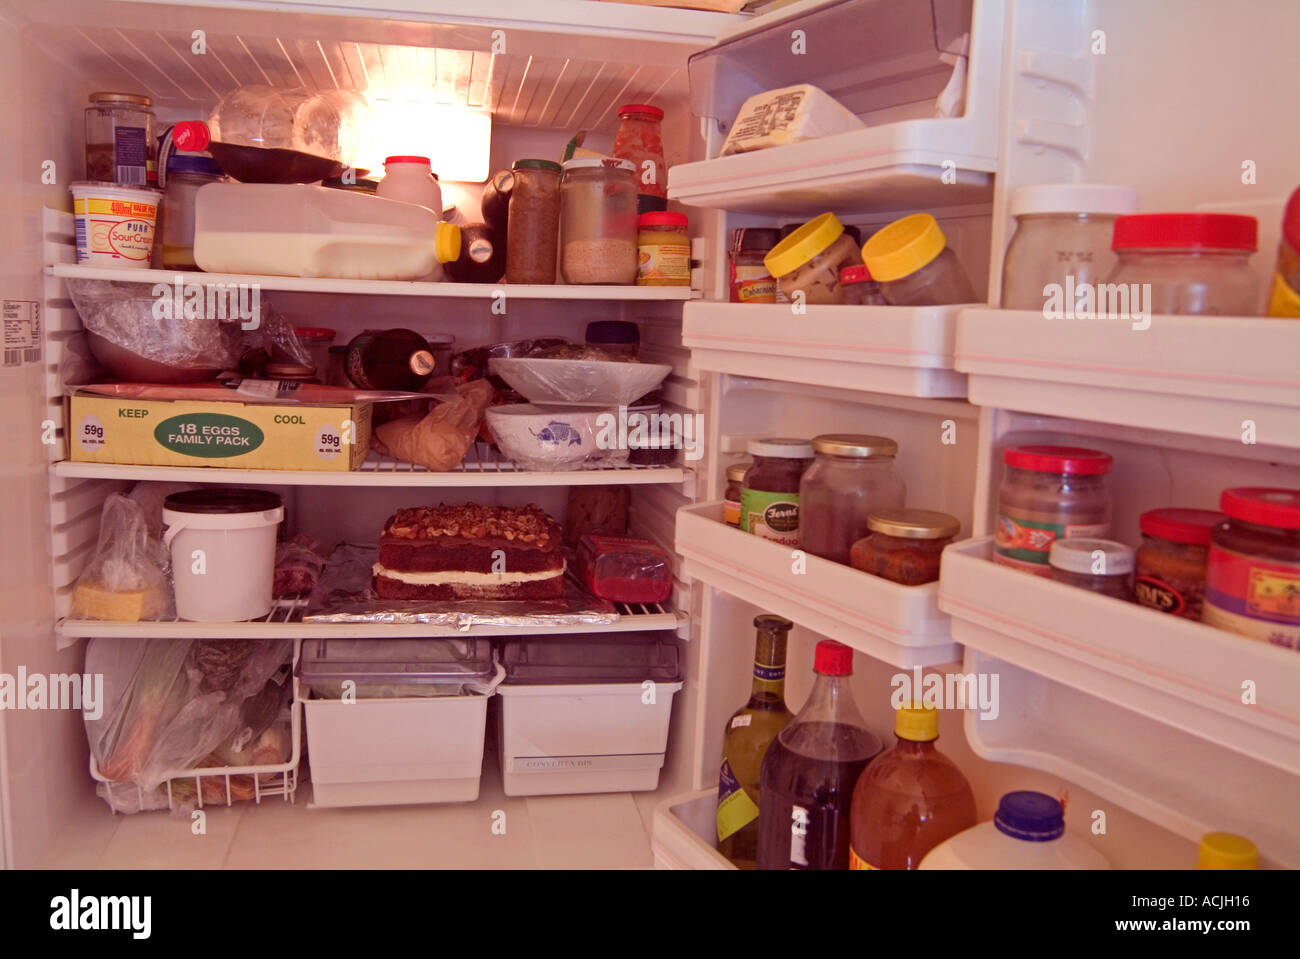 Saturado refrigerador desordenados. Foto de stock